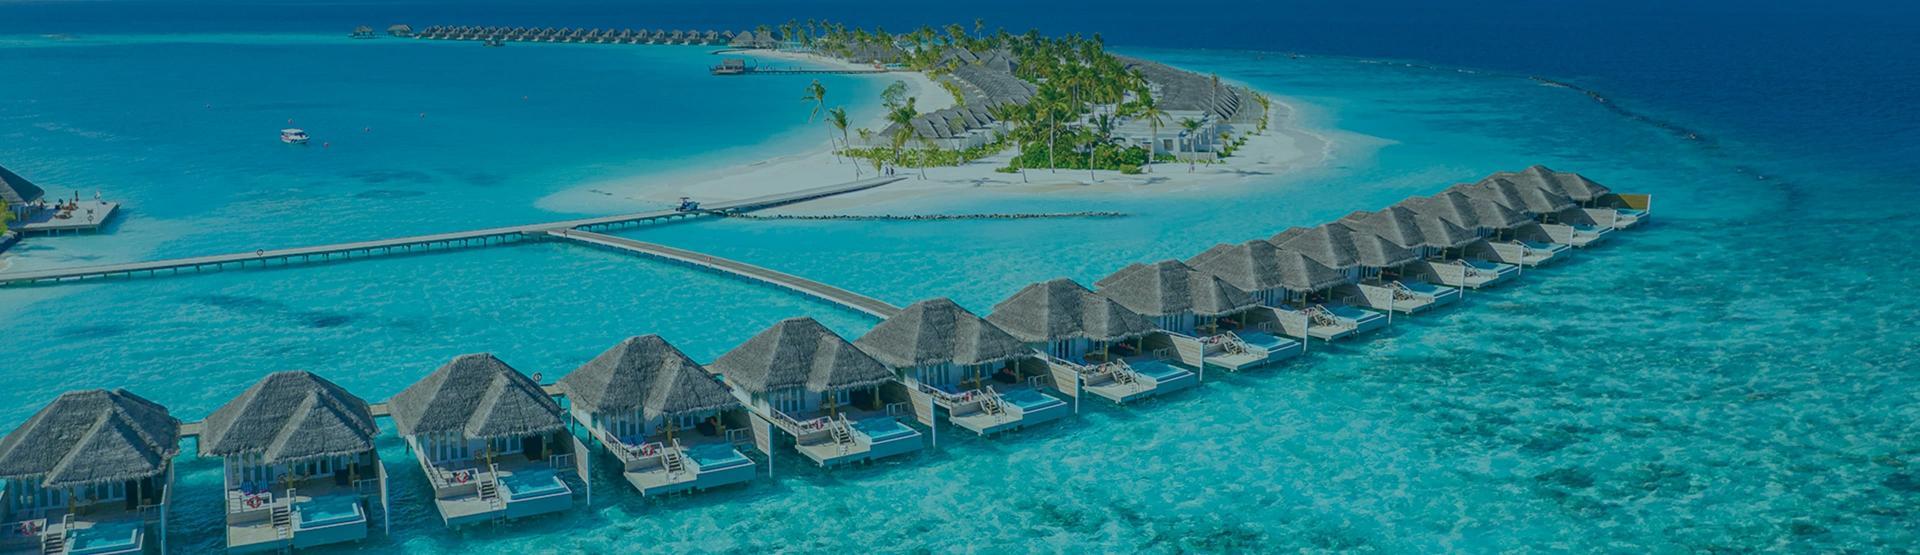 ابحث على و احجز اي فندق في جزر المالديف